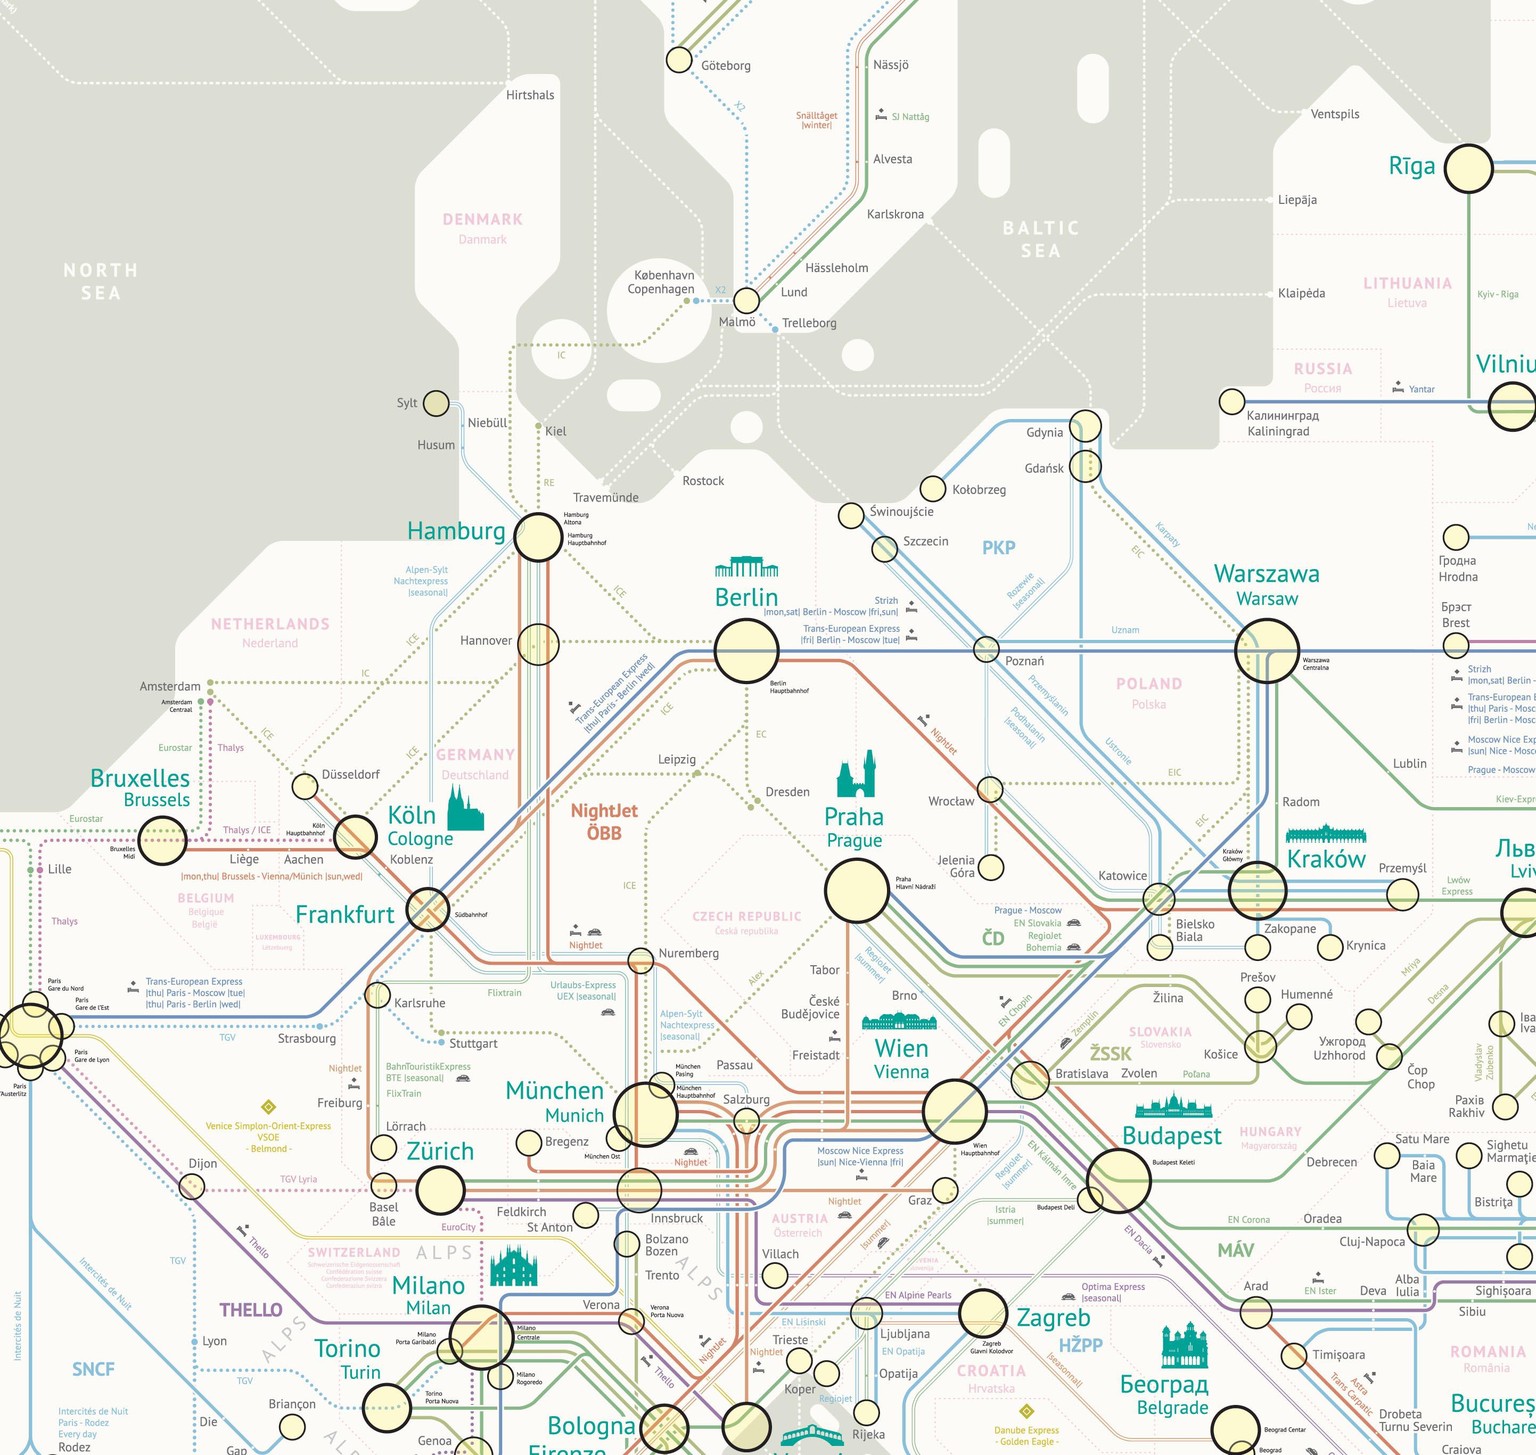 Jug Cerovićs Karte mit allen Nachtzugverbindungen Europas. Die vollständige, zoombare Karte hat er auf seine Website geladen.